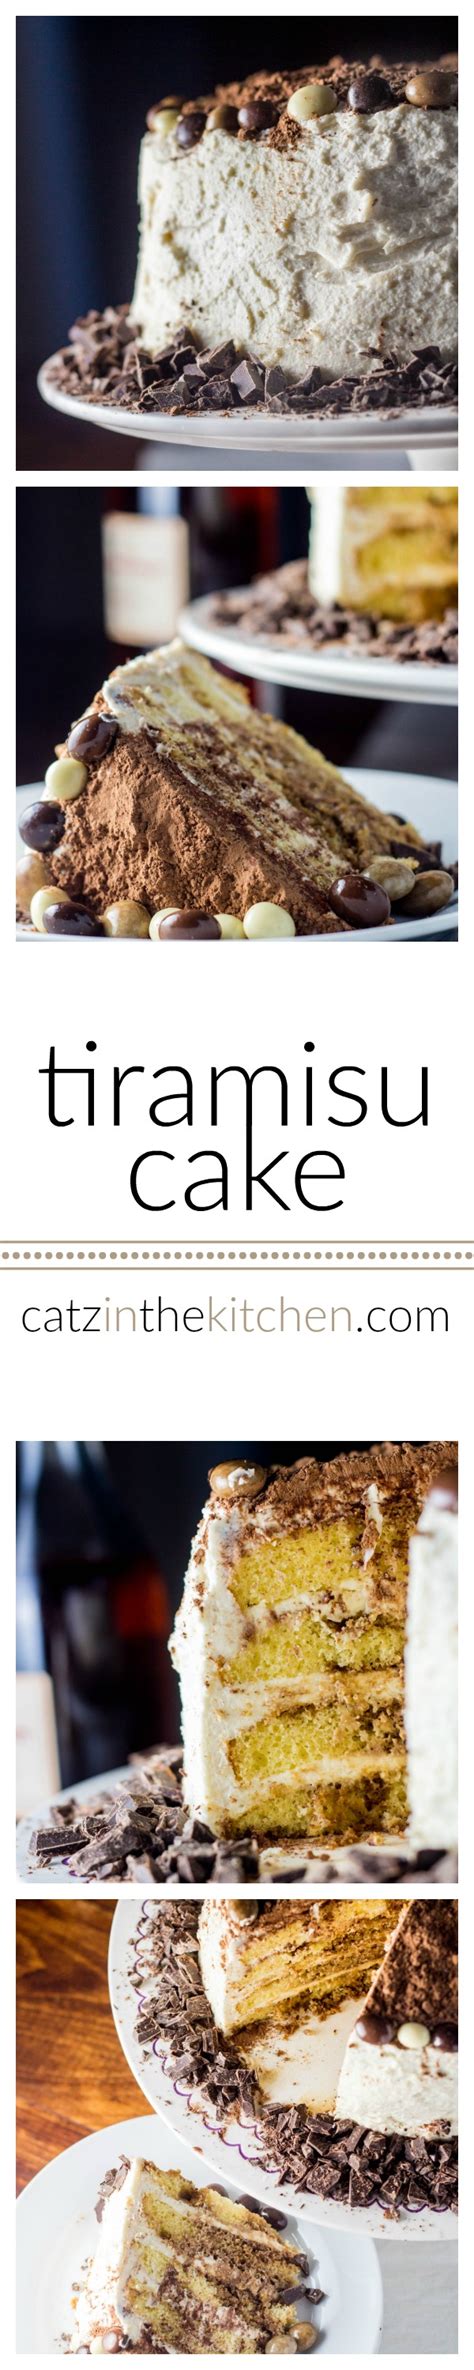 Tiramisu Cake Catz In The Kitchen